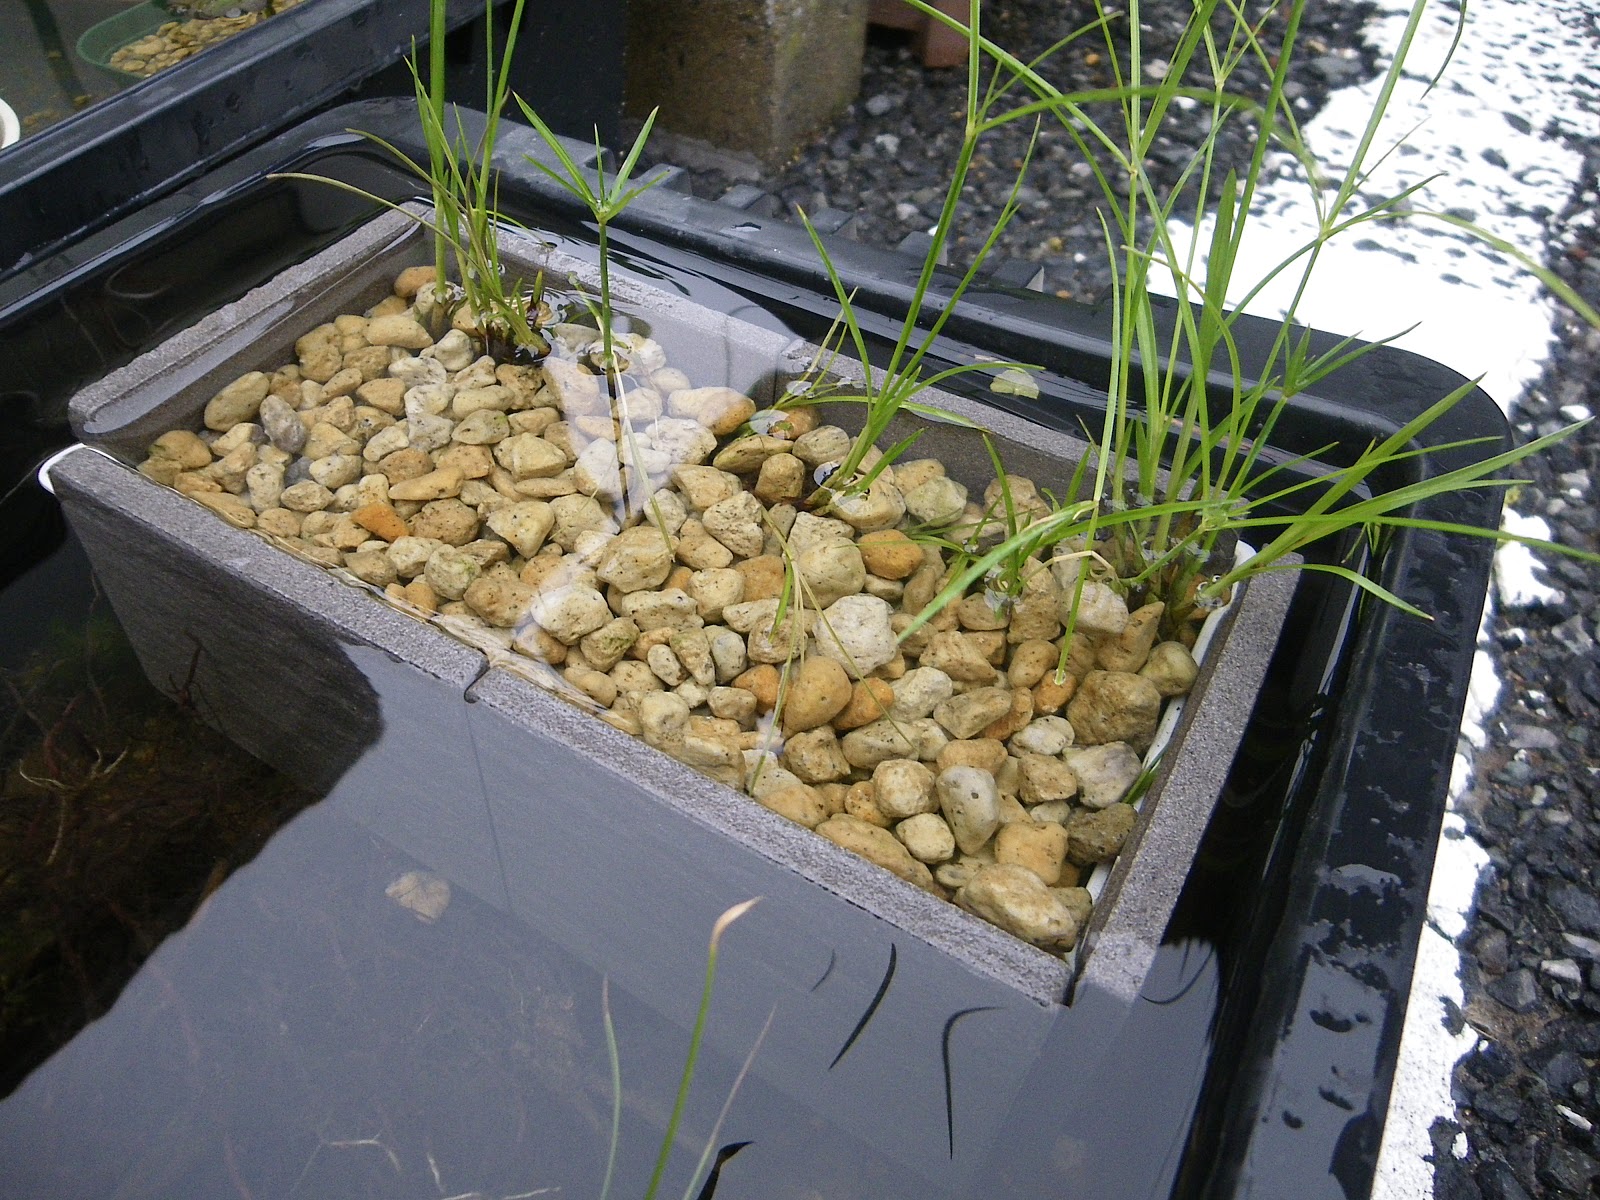 ビオトープの水草は 鉢植えにします 植える容器を製作してみる メダカの大工